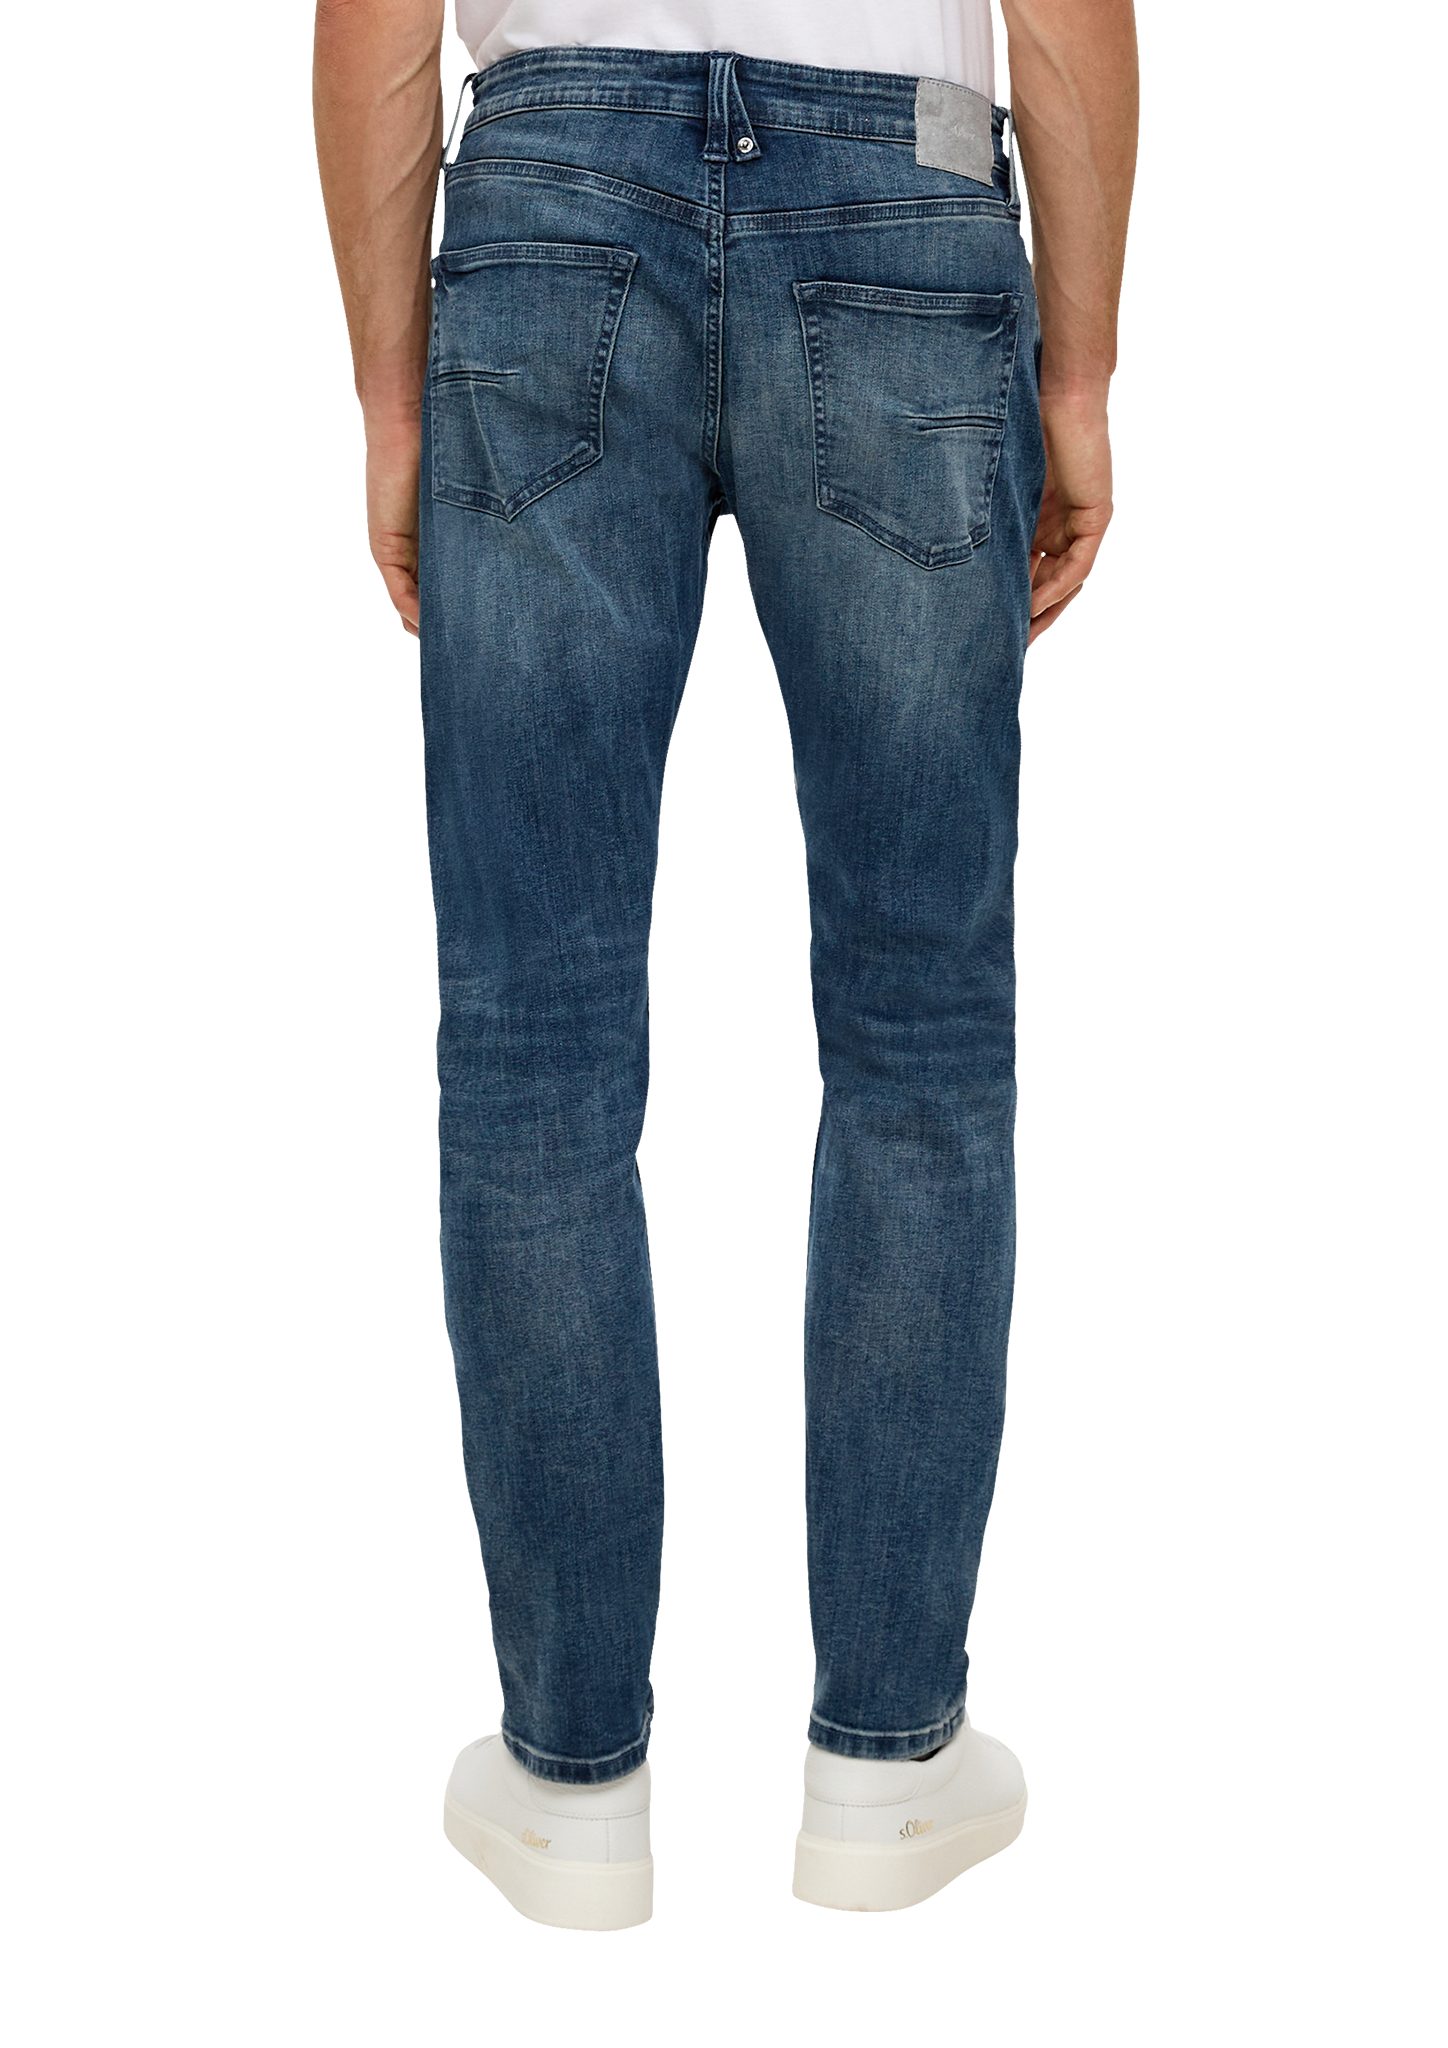 s.Oliver Stoffhose Jeans Leg Leder-Patch, / Tapered Rise Mid 5-Pocket-Stil / Regular / Fit / Waschung dunkelblau